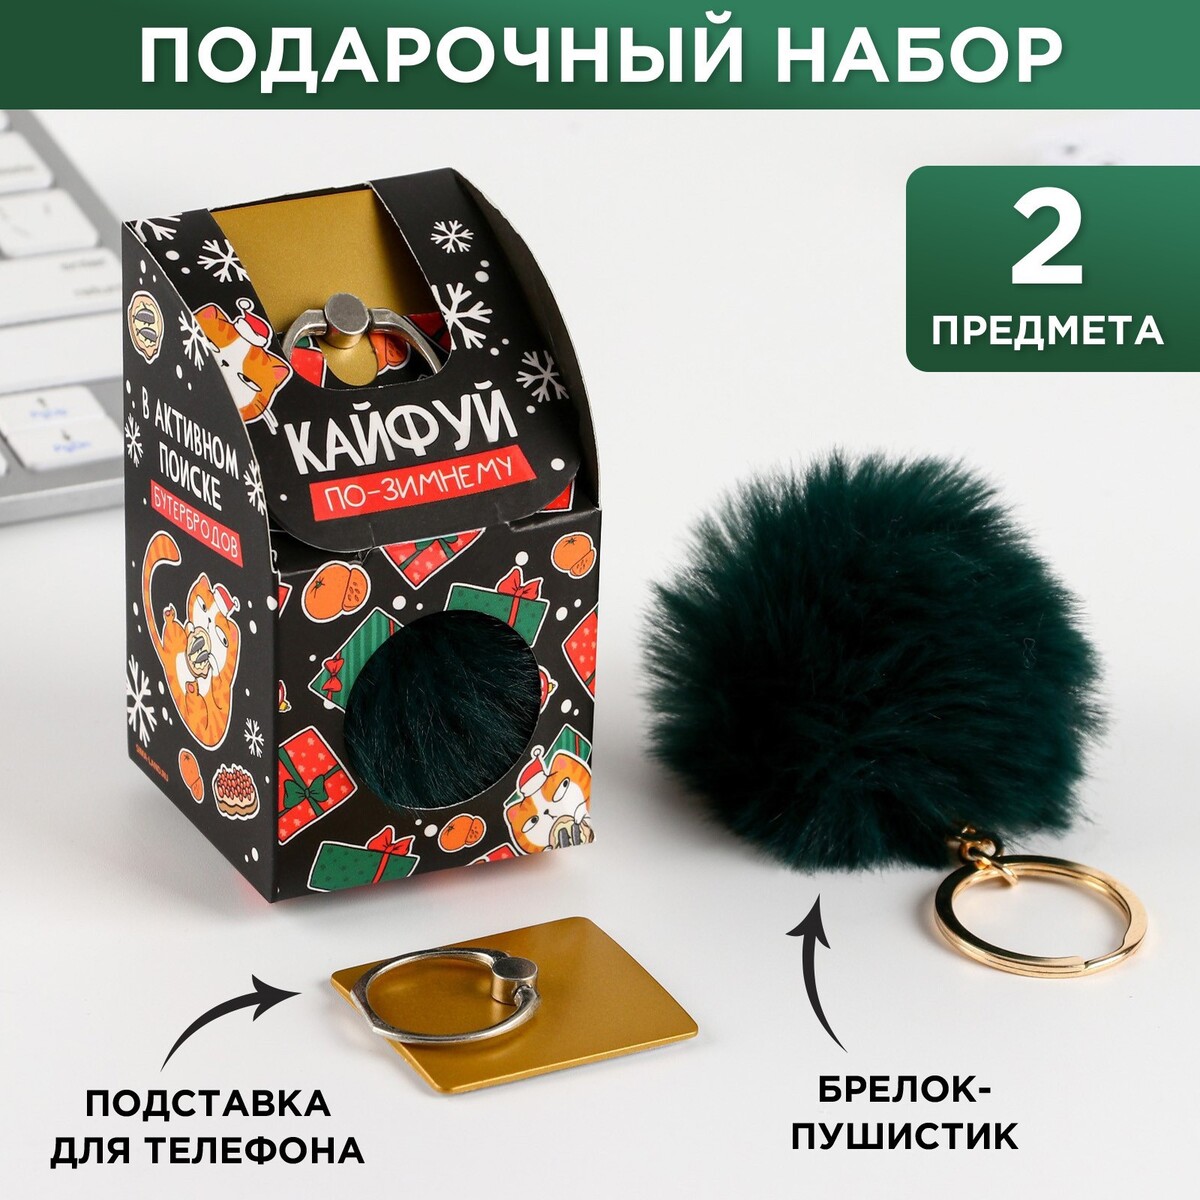 Подарочный новогодний набор: брелок-пушистик и кольцо-подставка для телефона